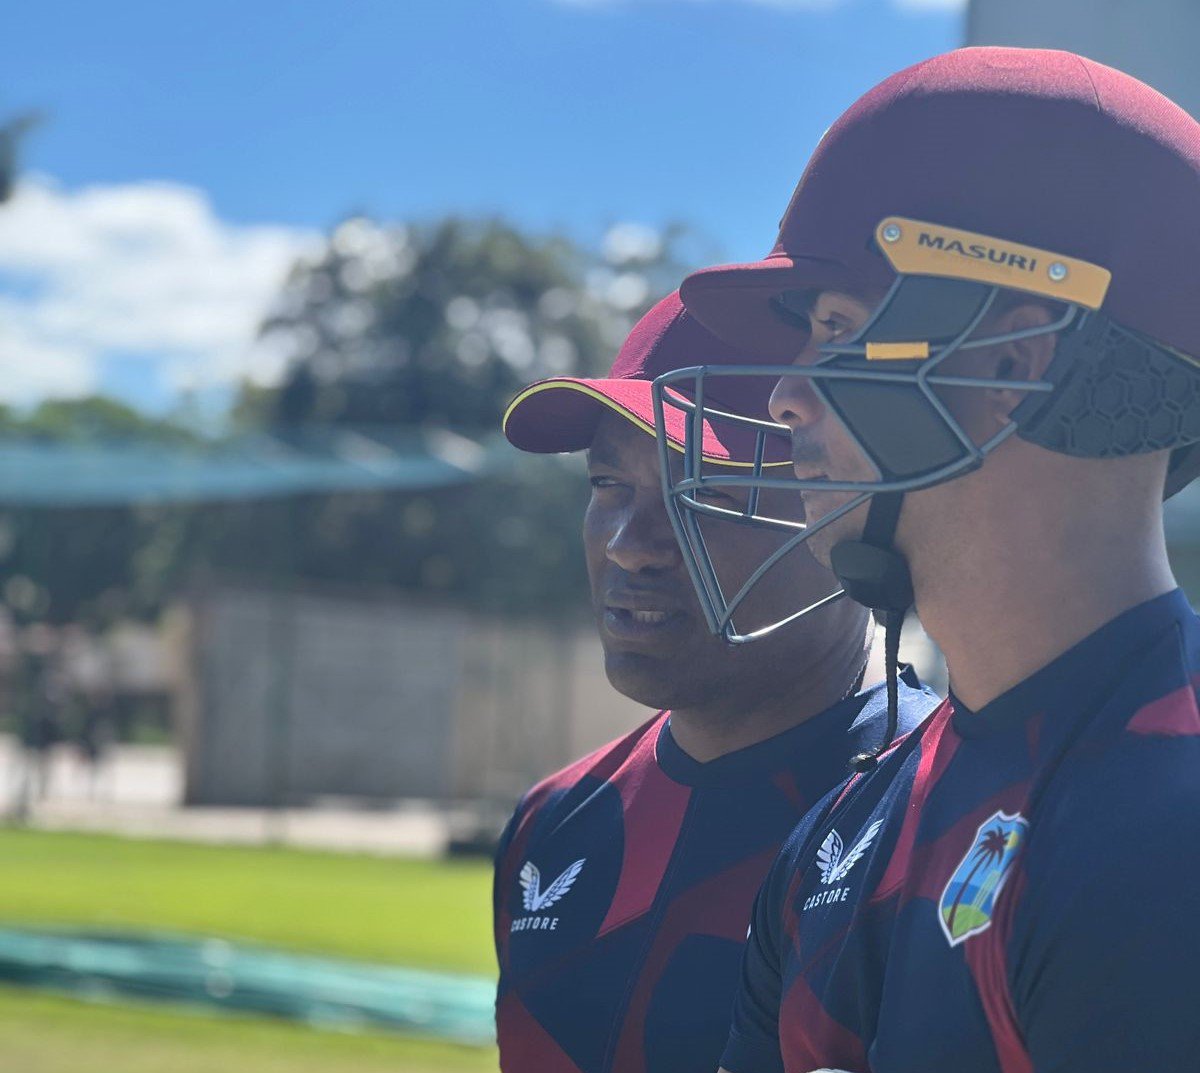 Cricket West Indies: Dorongan besar untuk WestIndies Cricket, Brian Lara ditunjuk sebagai Mentor KINERJA untuk TIM WestIndies: Lihat OUT